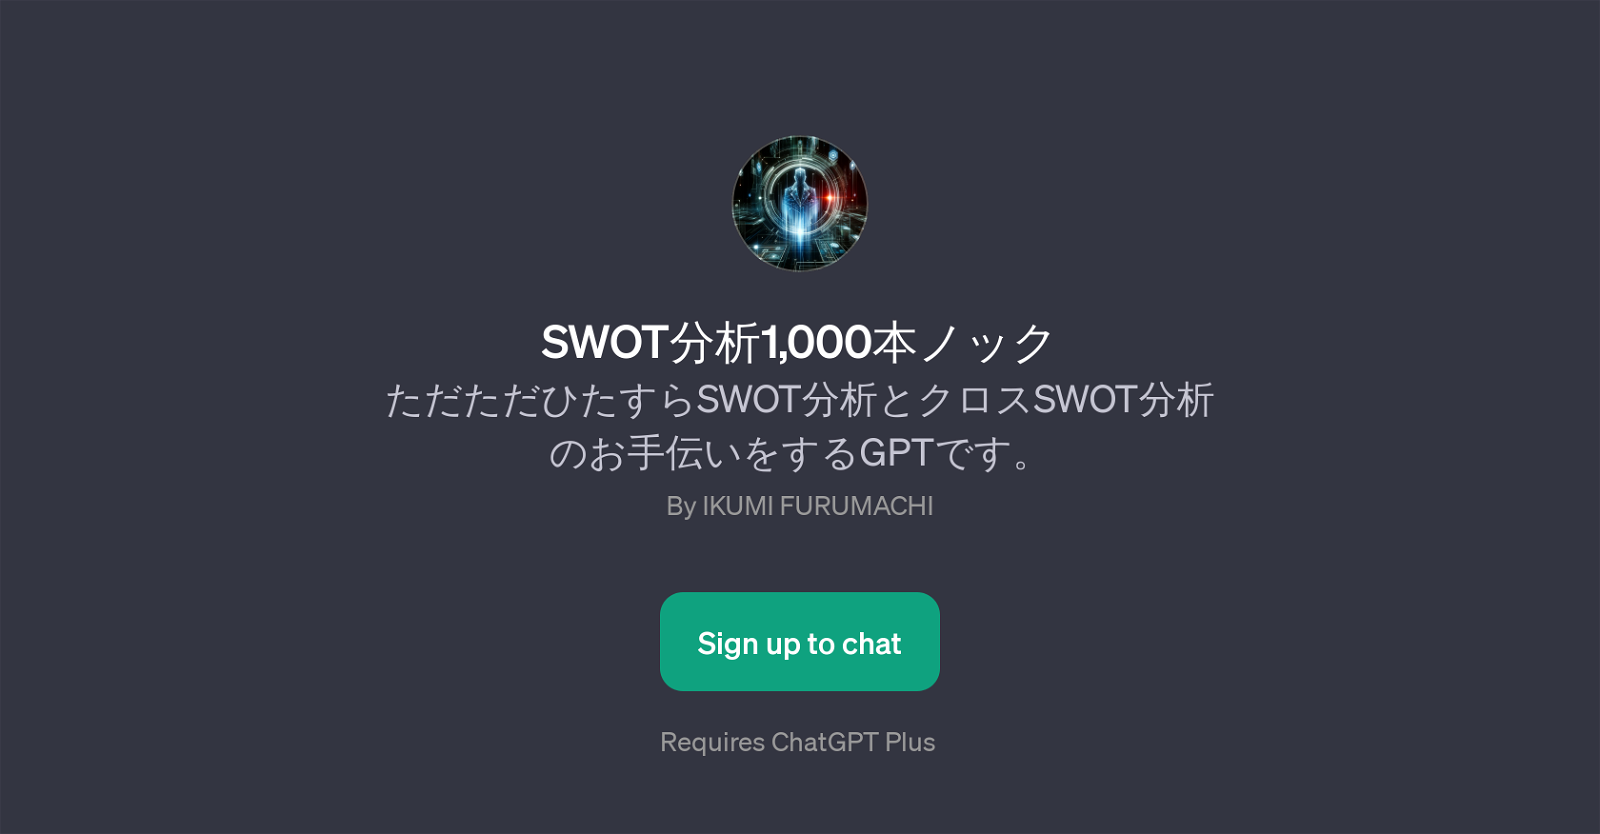 SWOT1,000 website